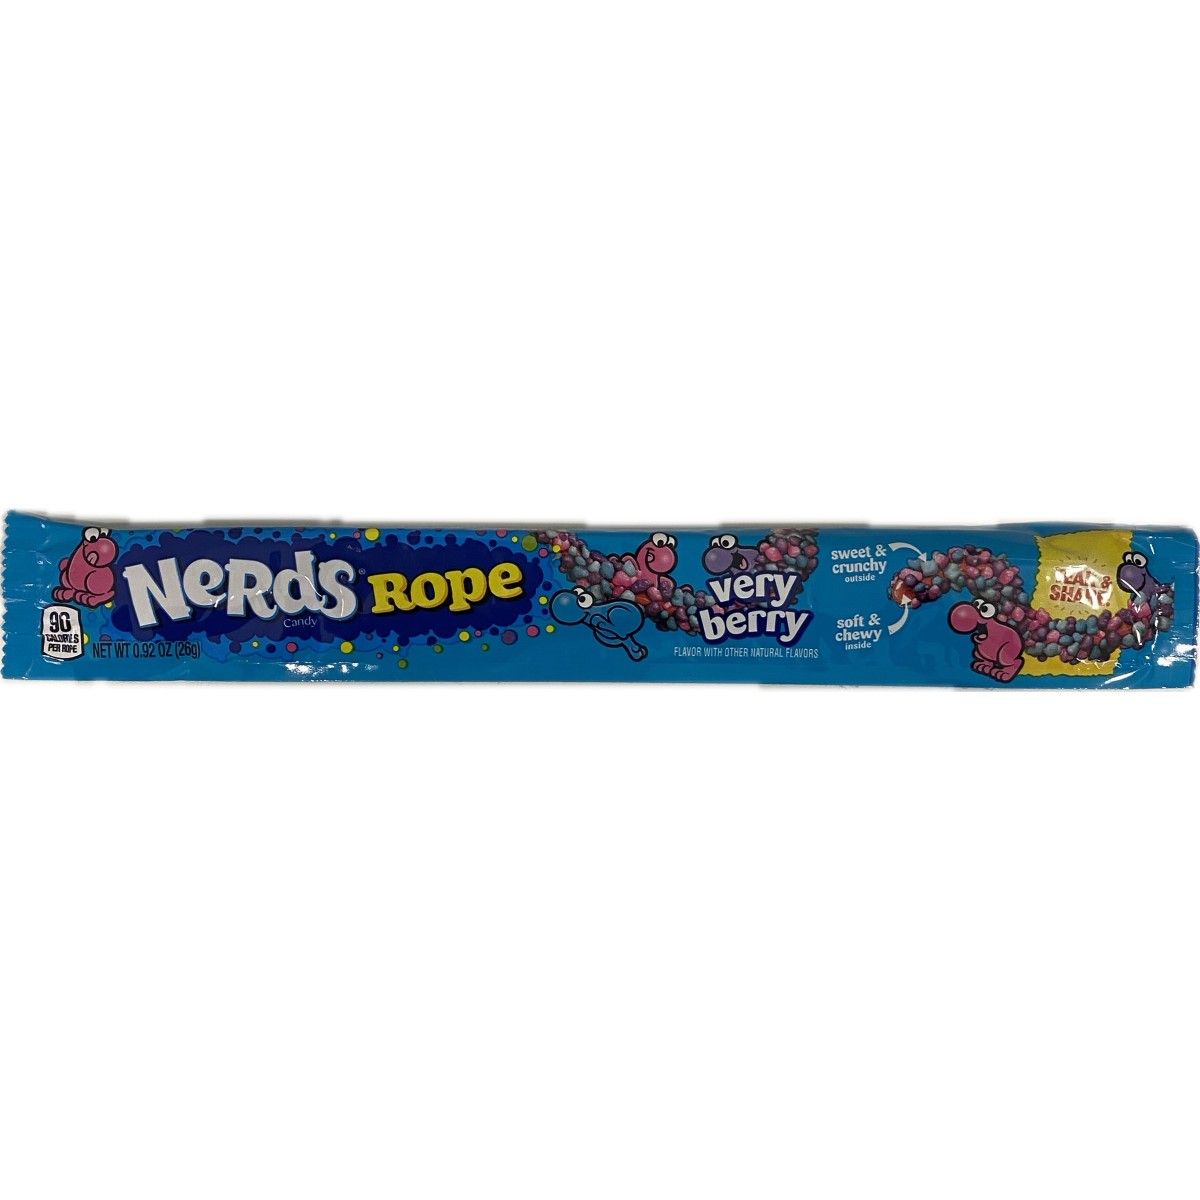 Nerds rope berry